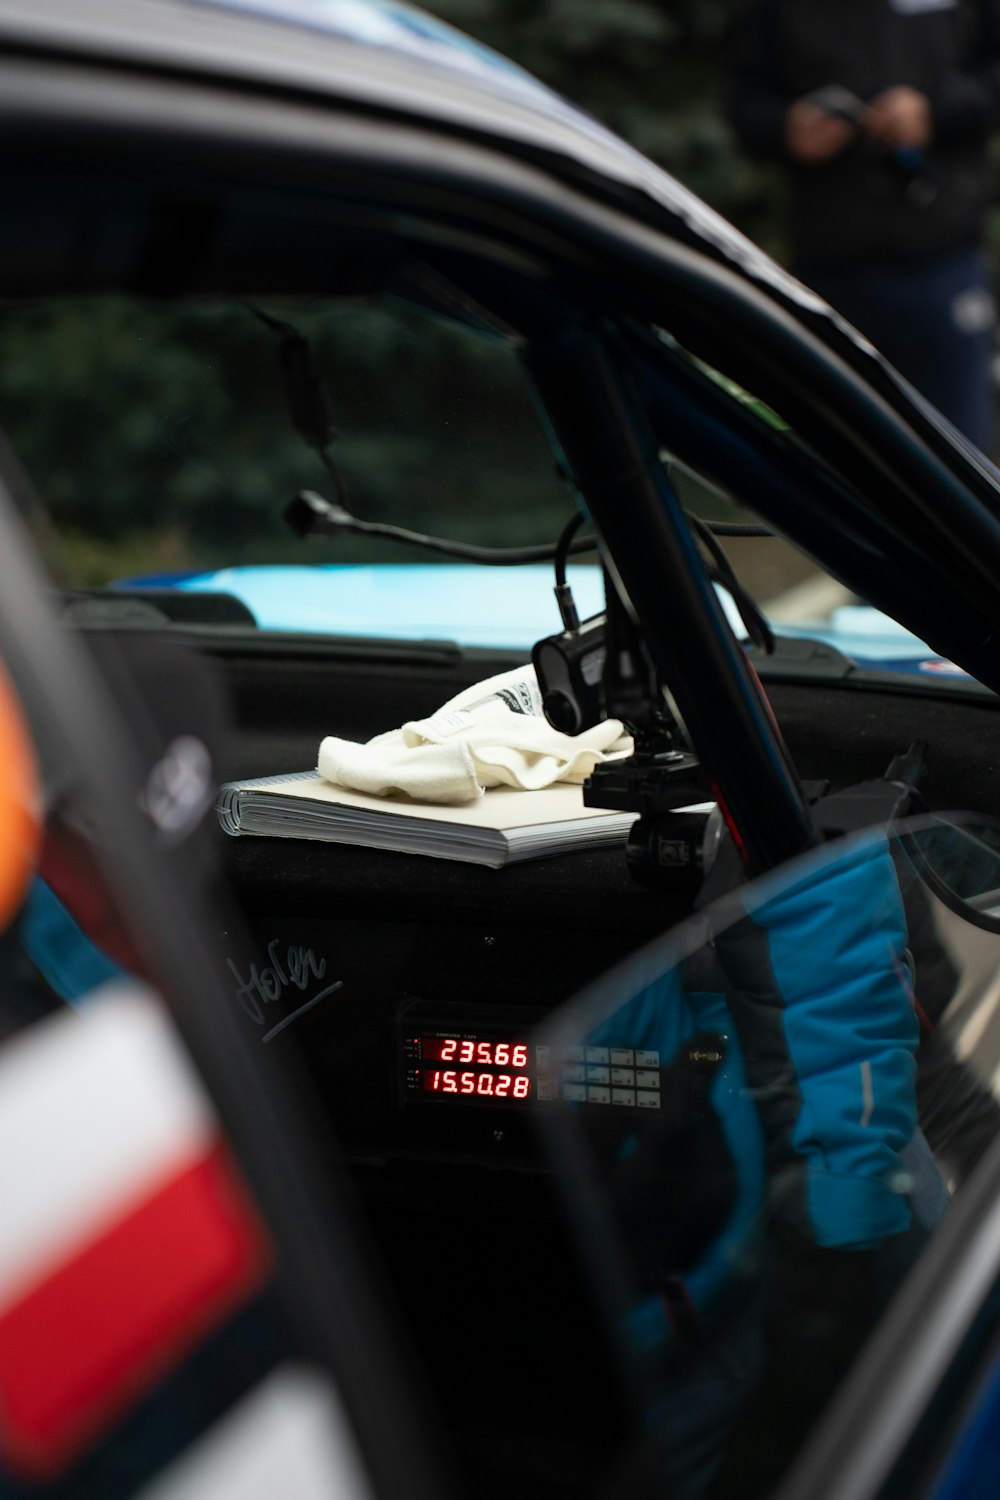 Un par de guantes encima de un libro en un coche